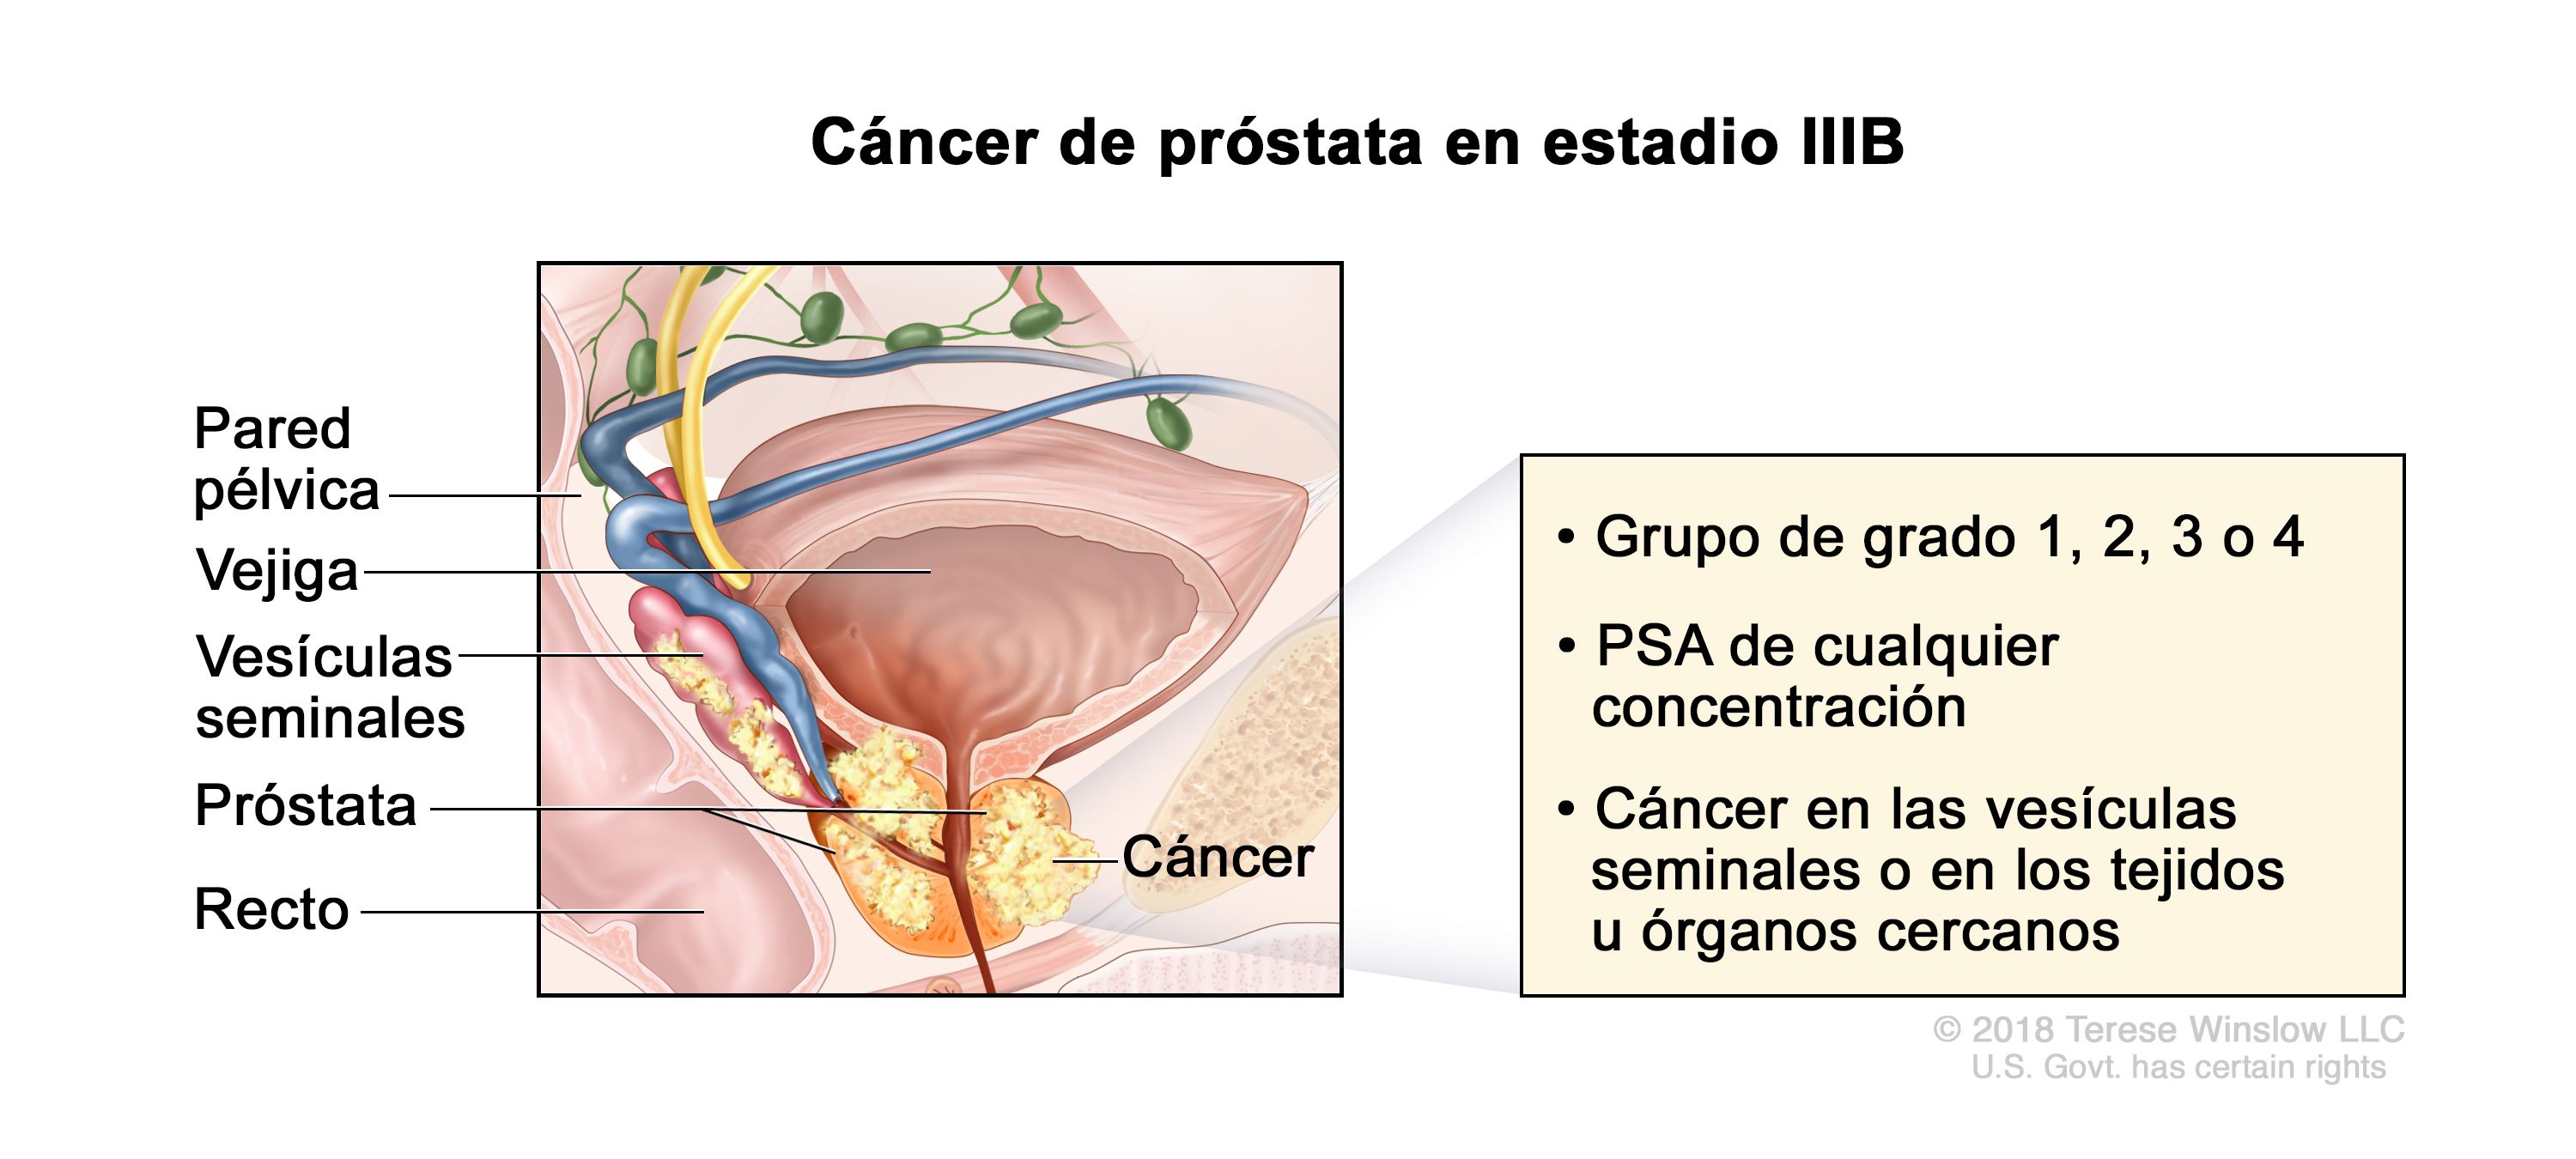 cáncer de próstata etapa 5 esperanza de vida)